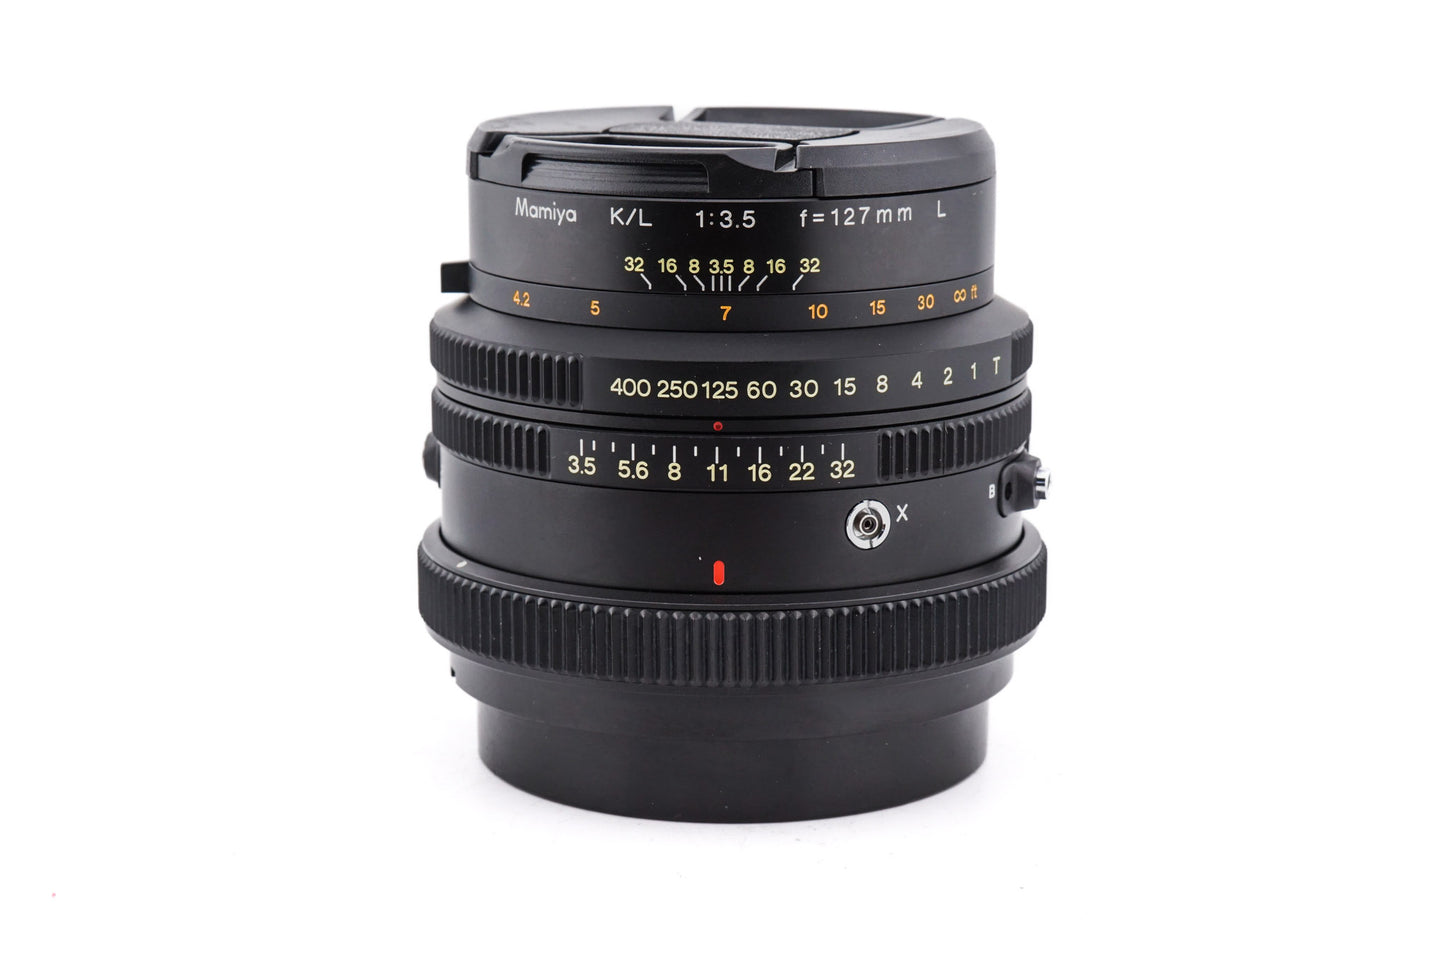 Mamiya 127mm f3.5 L K/L - Lens